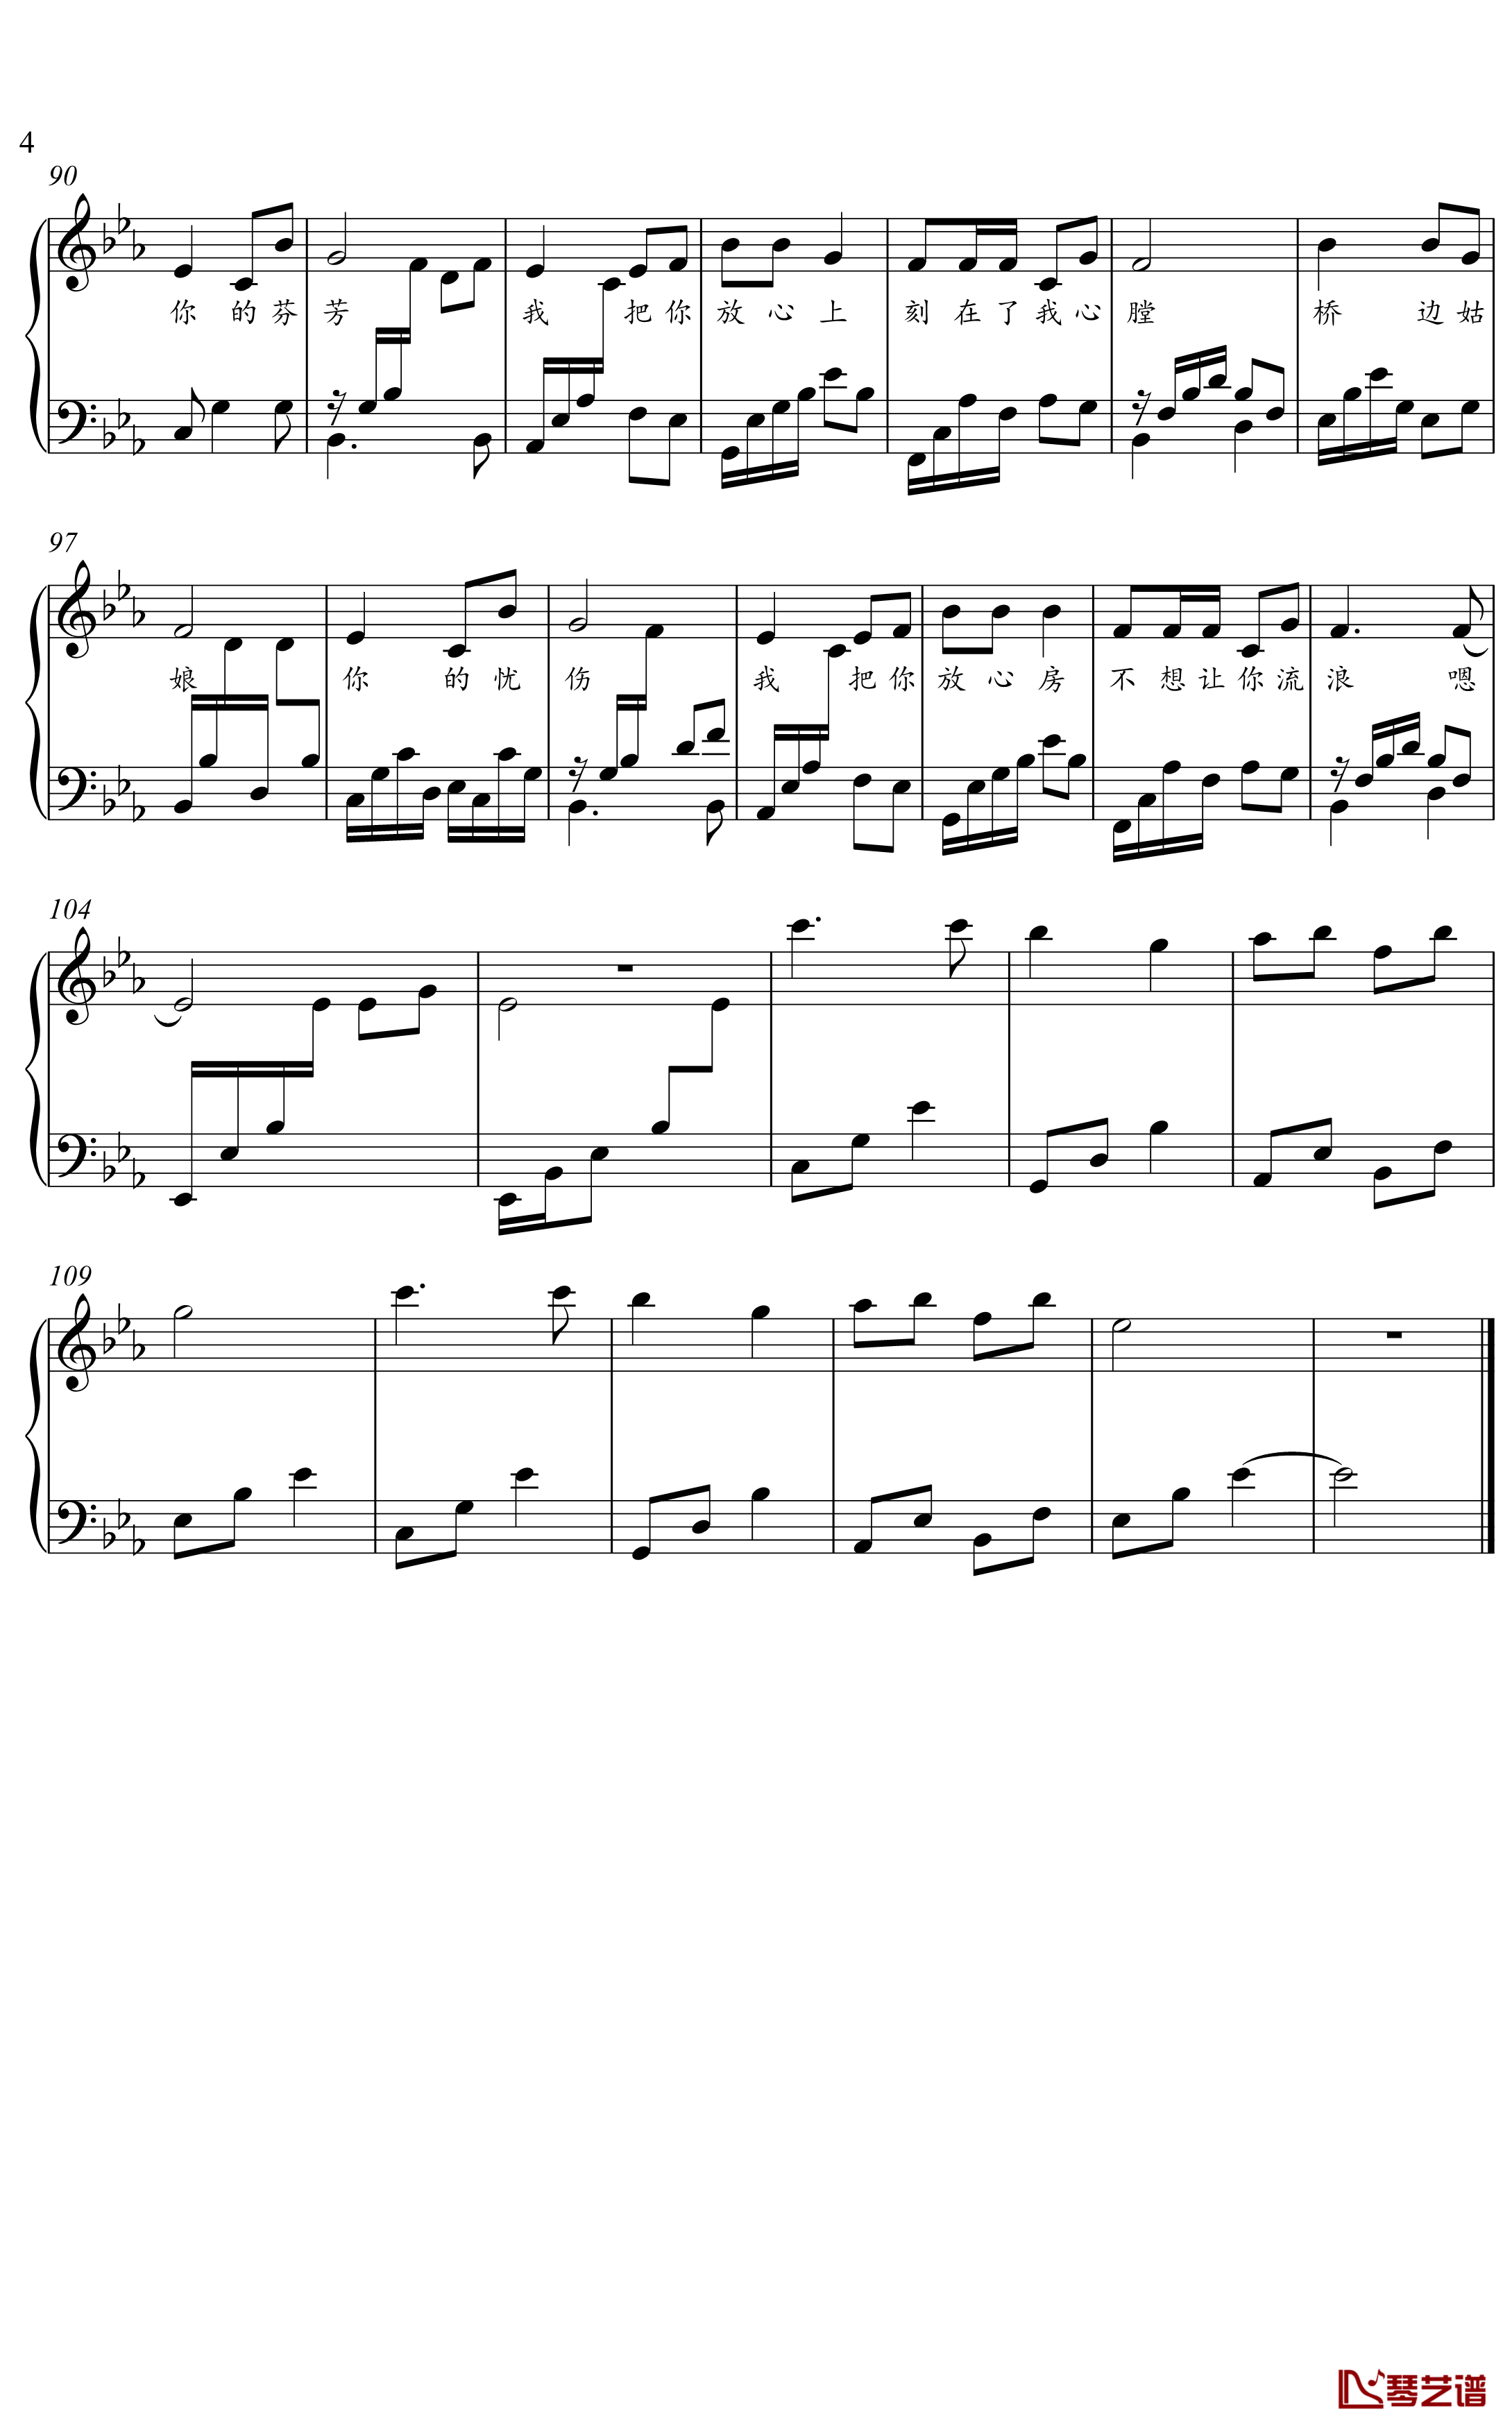 桥边姑娘钢琴谱-金老师原声独奏谱2001034